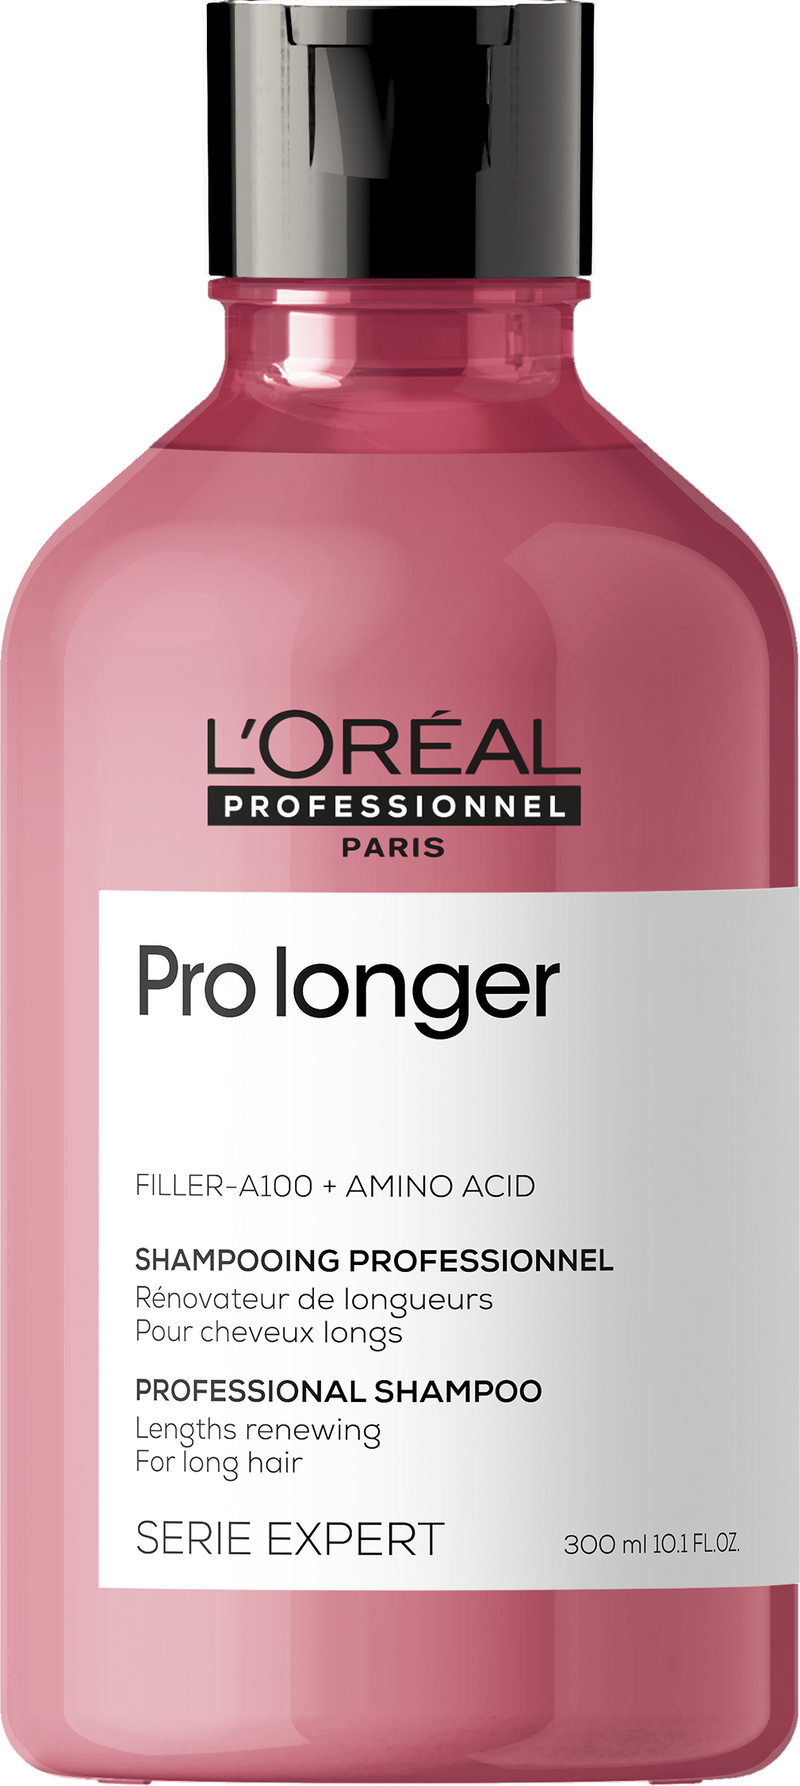 Pro Longer Shampoo | SERIE EXPERT | 300 ml